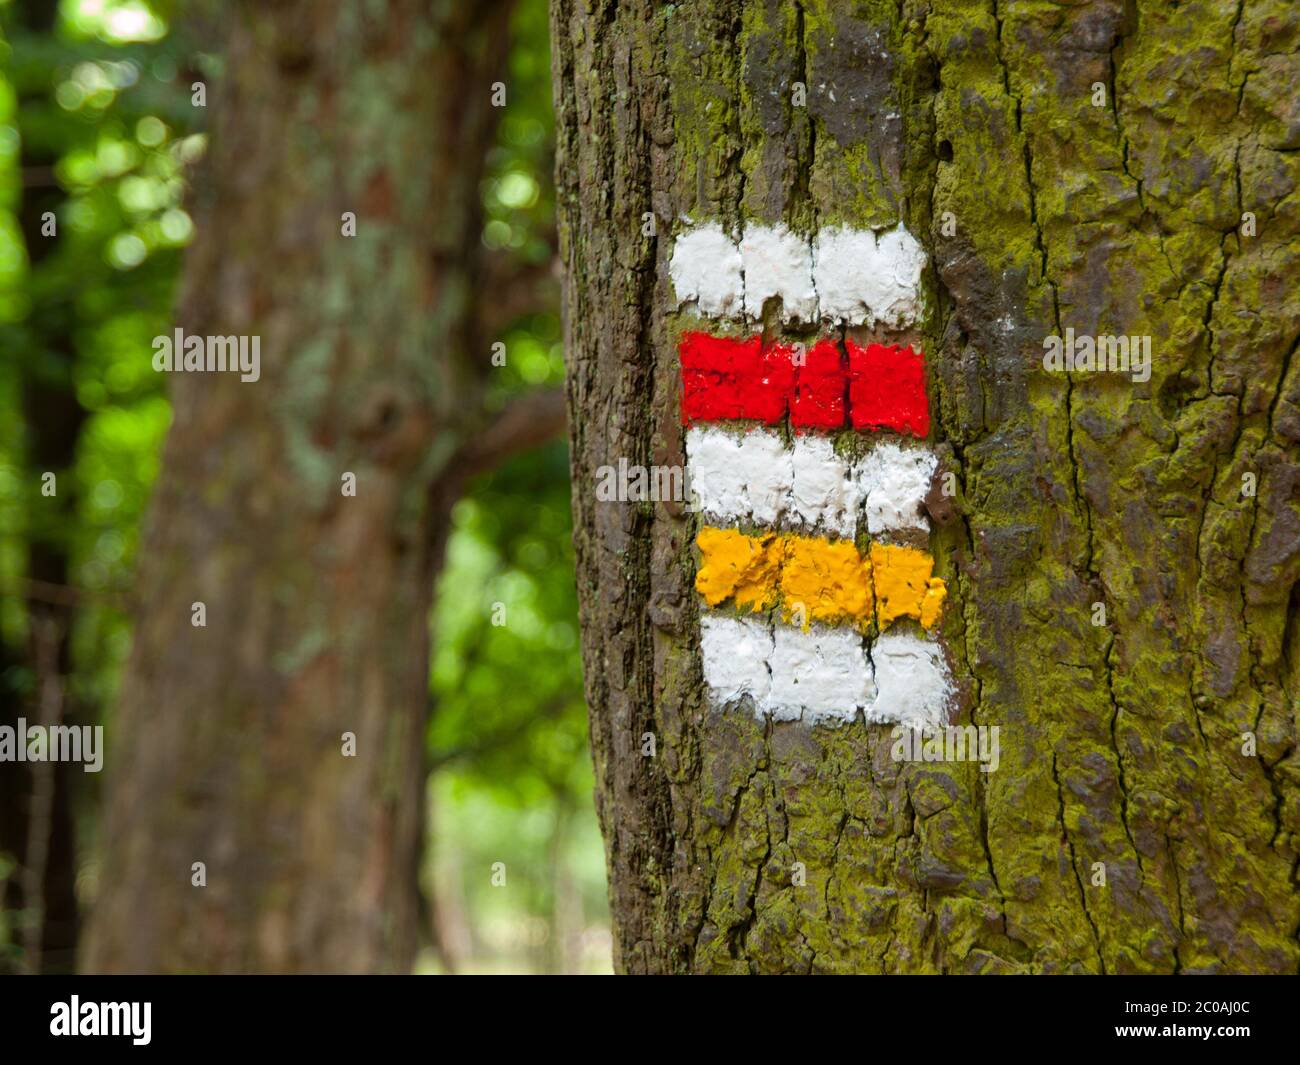 Segnaletica turistica ceca - contrassegno rosso e giallo sulla corteccia dell'albero Foto Stock